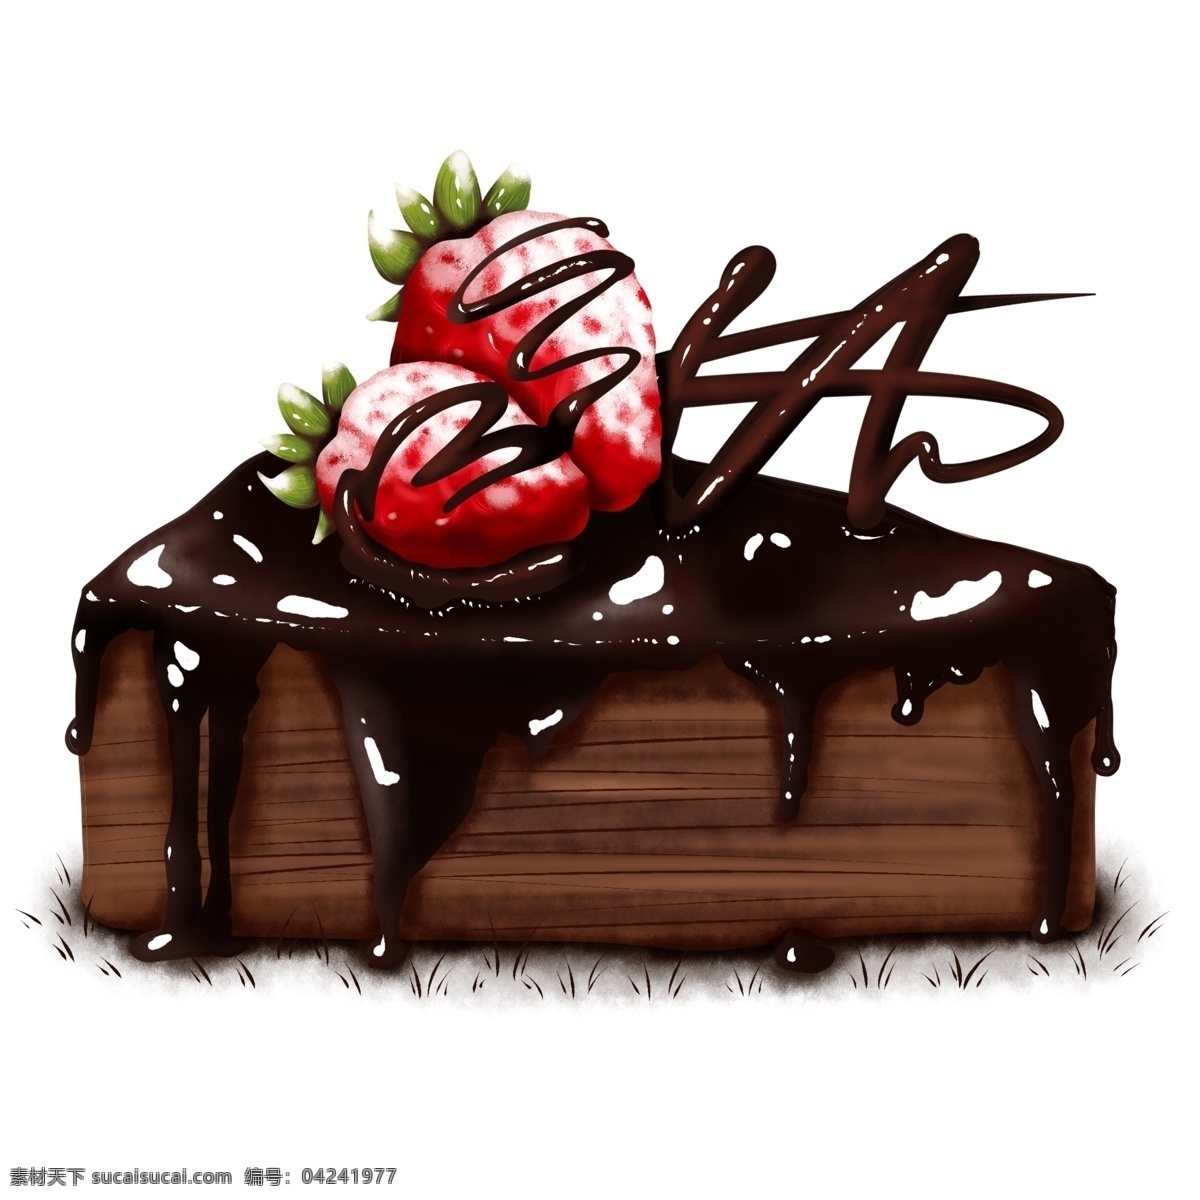 原创 手绘 食物 巧克力 草莓 酱 杯子 蛋糕 海报素材 商用 巧克力酱 杯子蛋糕 元素